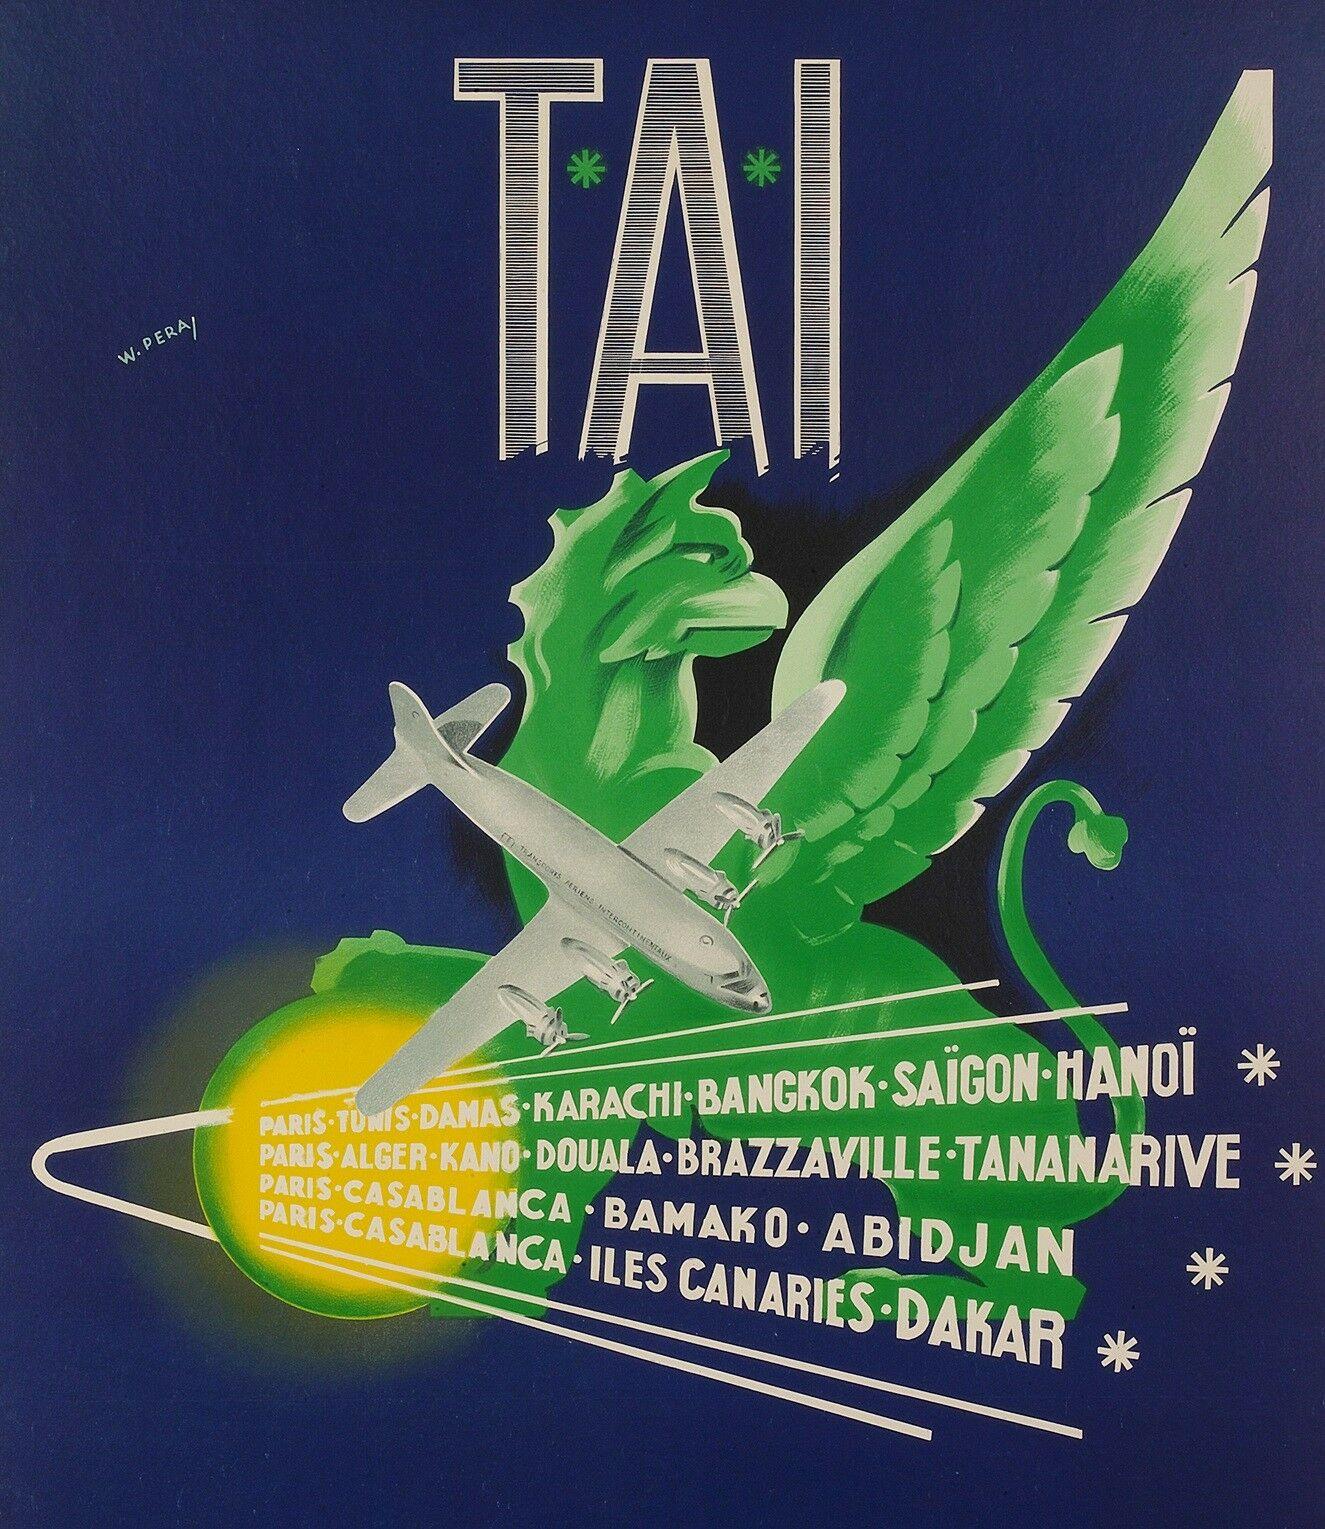 Original Aviation Poster-W. Pera-Tai-Afrika-Asien-Indochina, ca. 1950

Transport Aériens Intercontinentaux (TAI) war ein französisches Privatunternehmen, das 1946 gegründet wurde und seinen Sitz am Flughafen Orly in Paris hatte. Im Jahr 1963